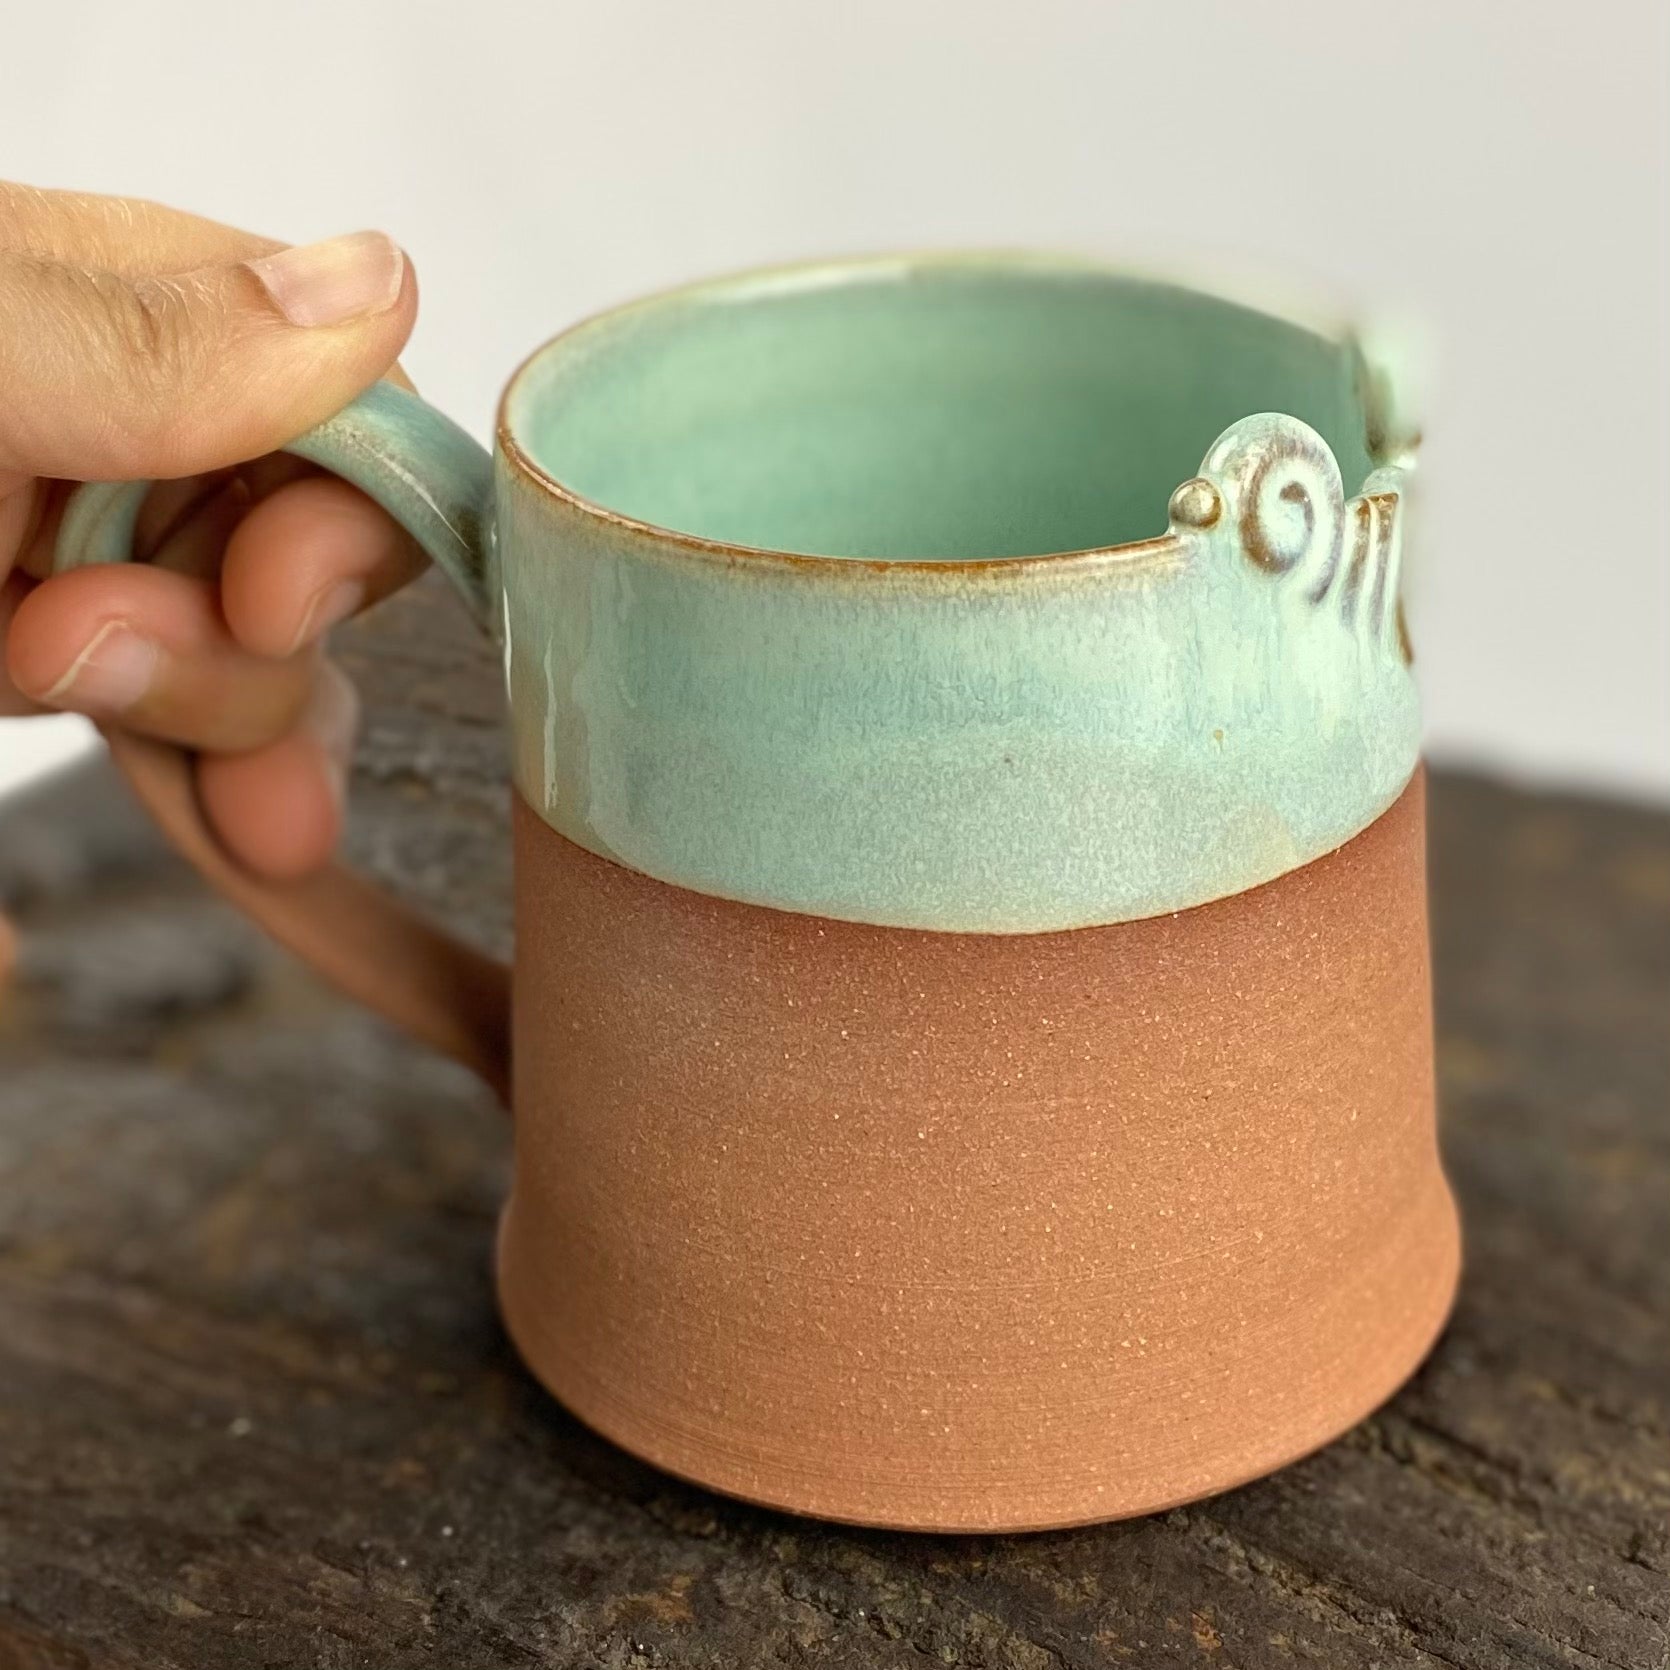 Aqua tea mug with comfortable handle